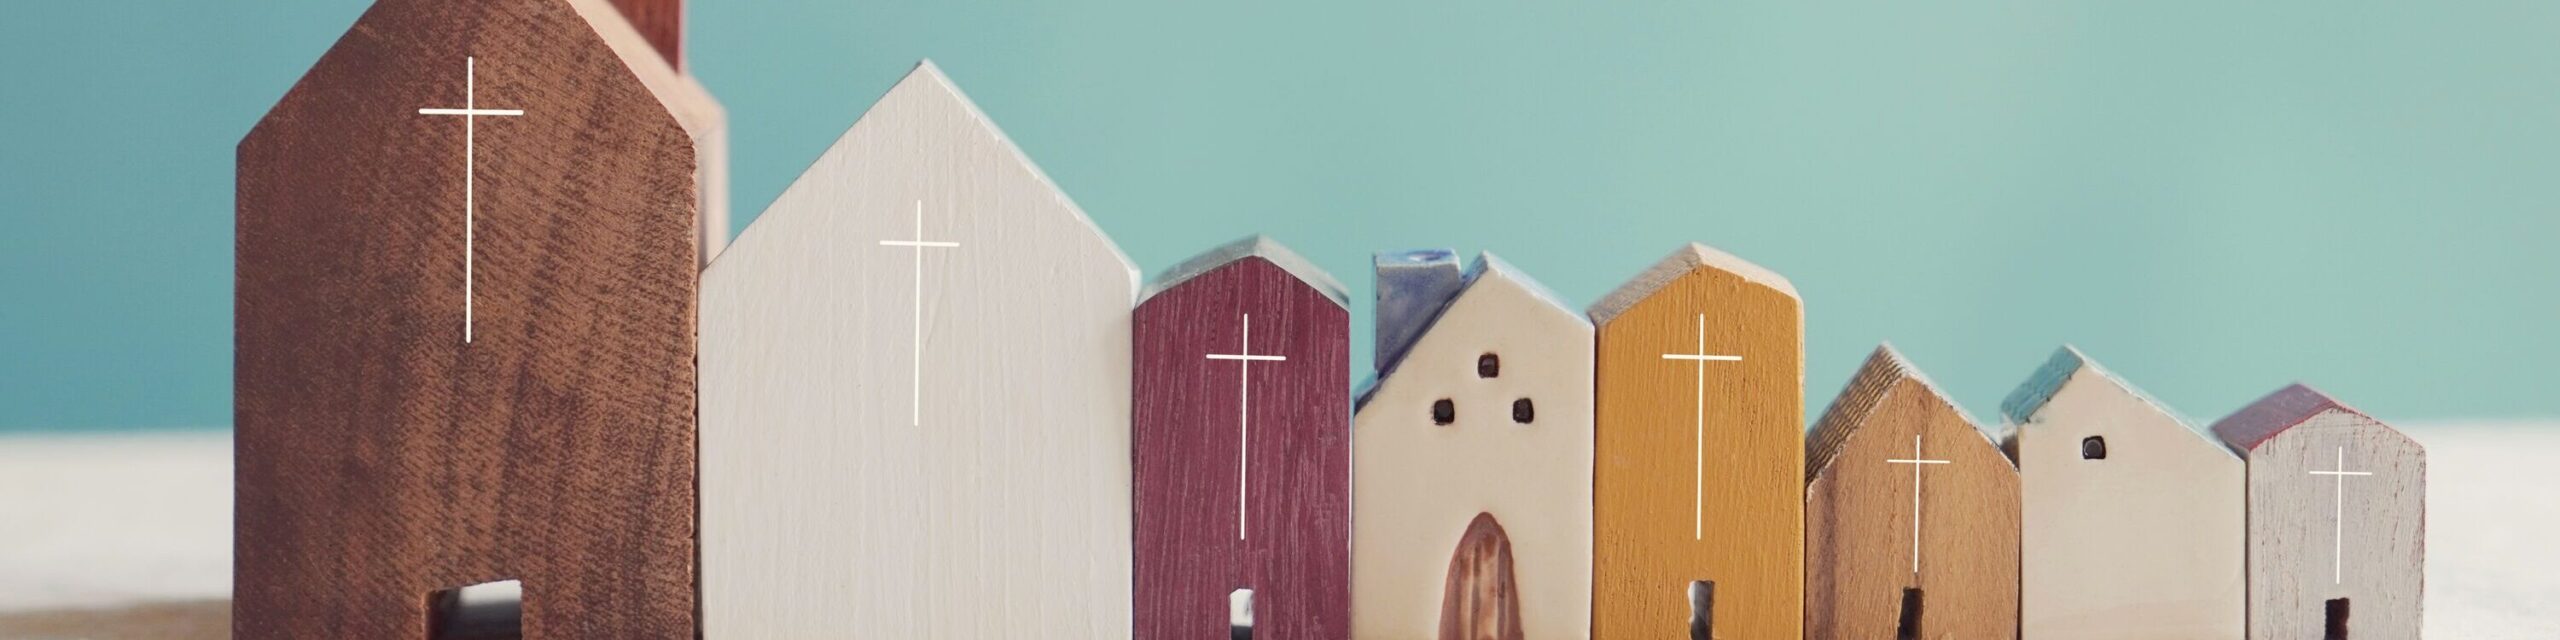 Kirchen aus Holz